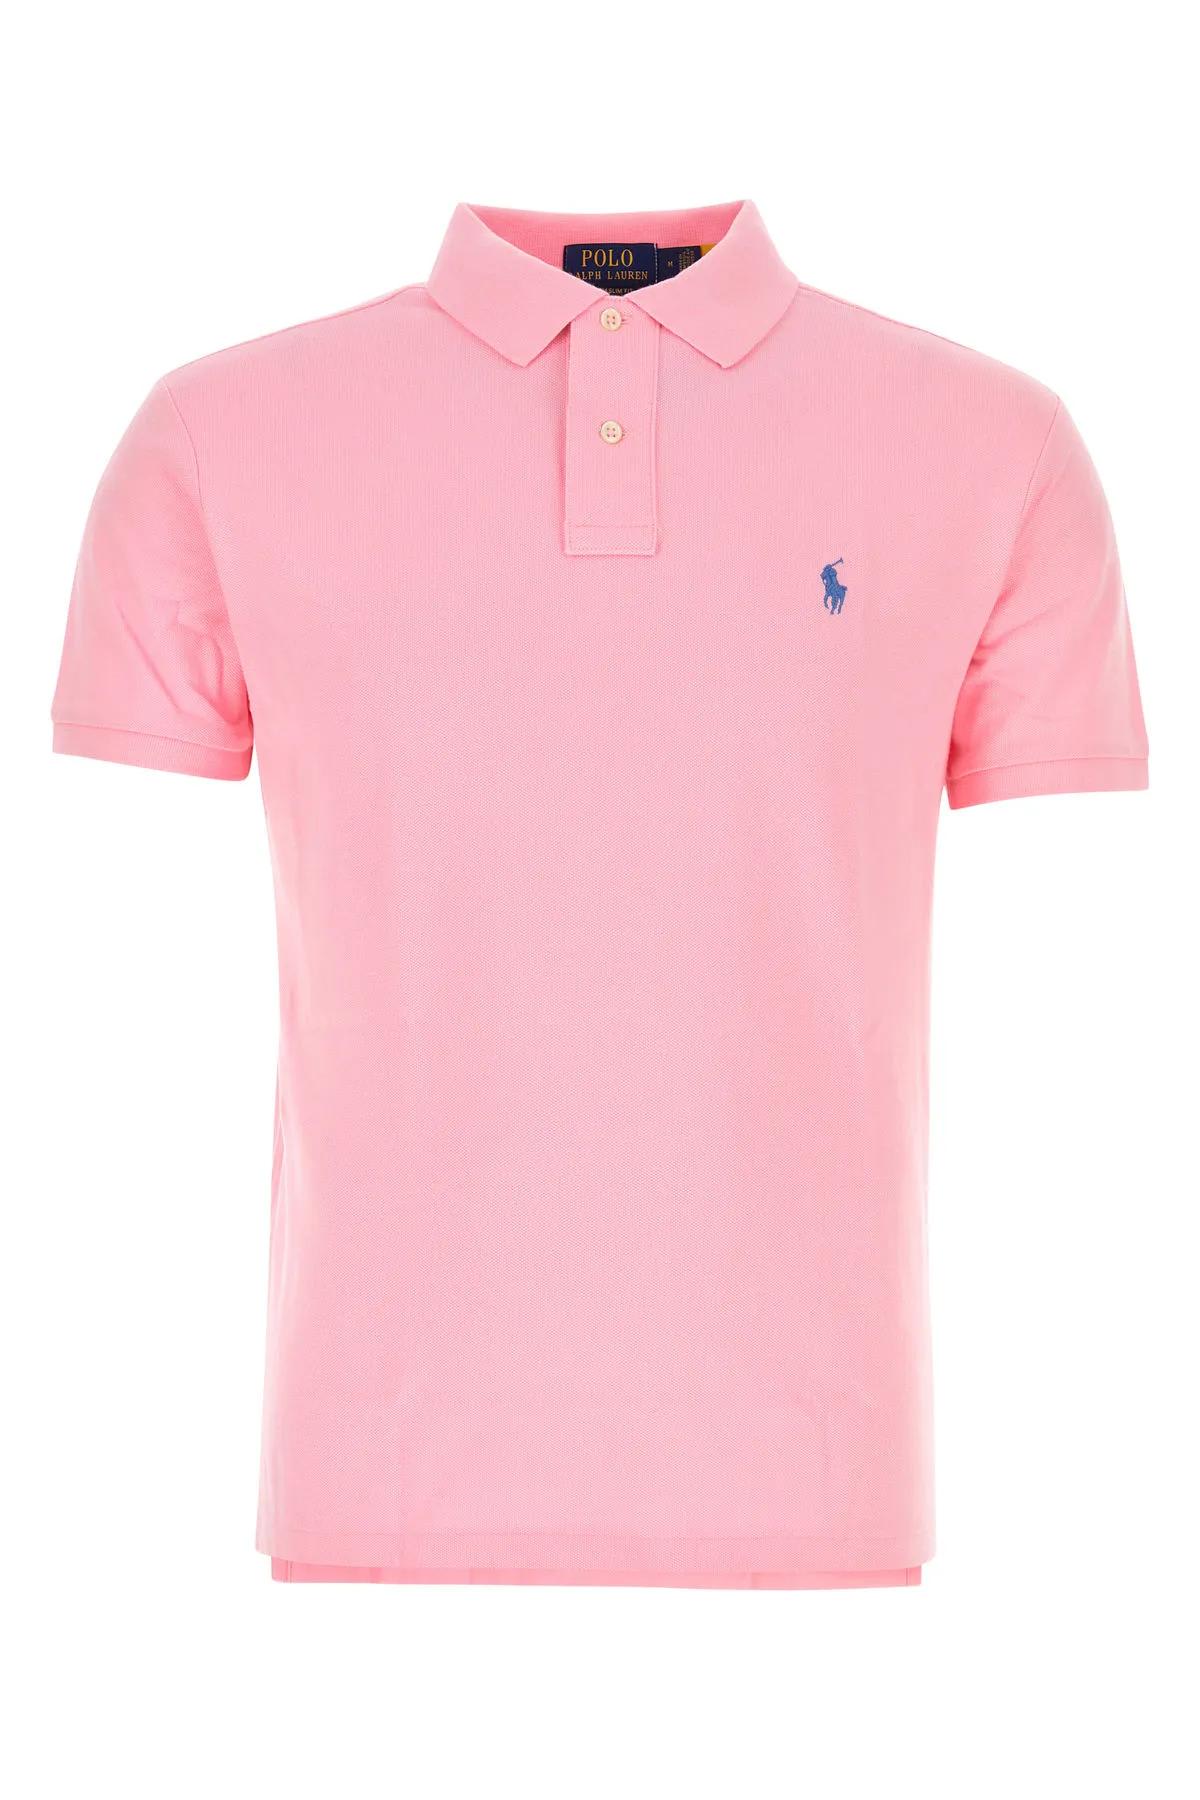 Ralph Lauren Pink Piquet Polo Shirt In Carmel Pink